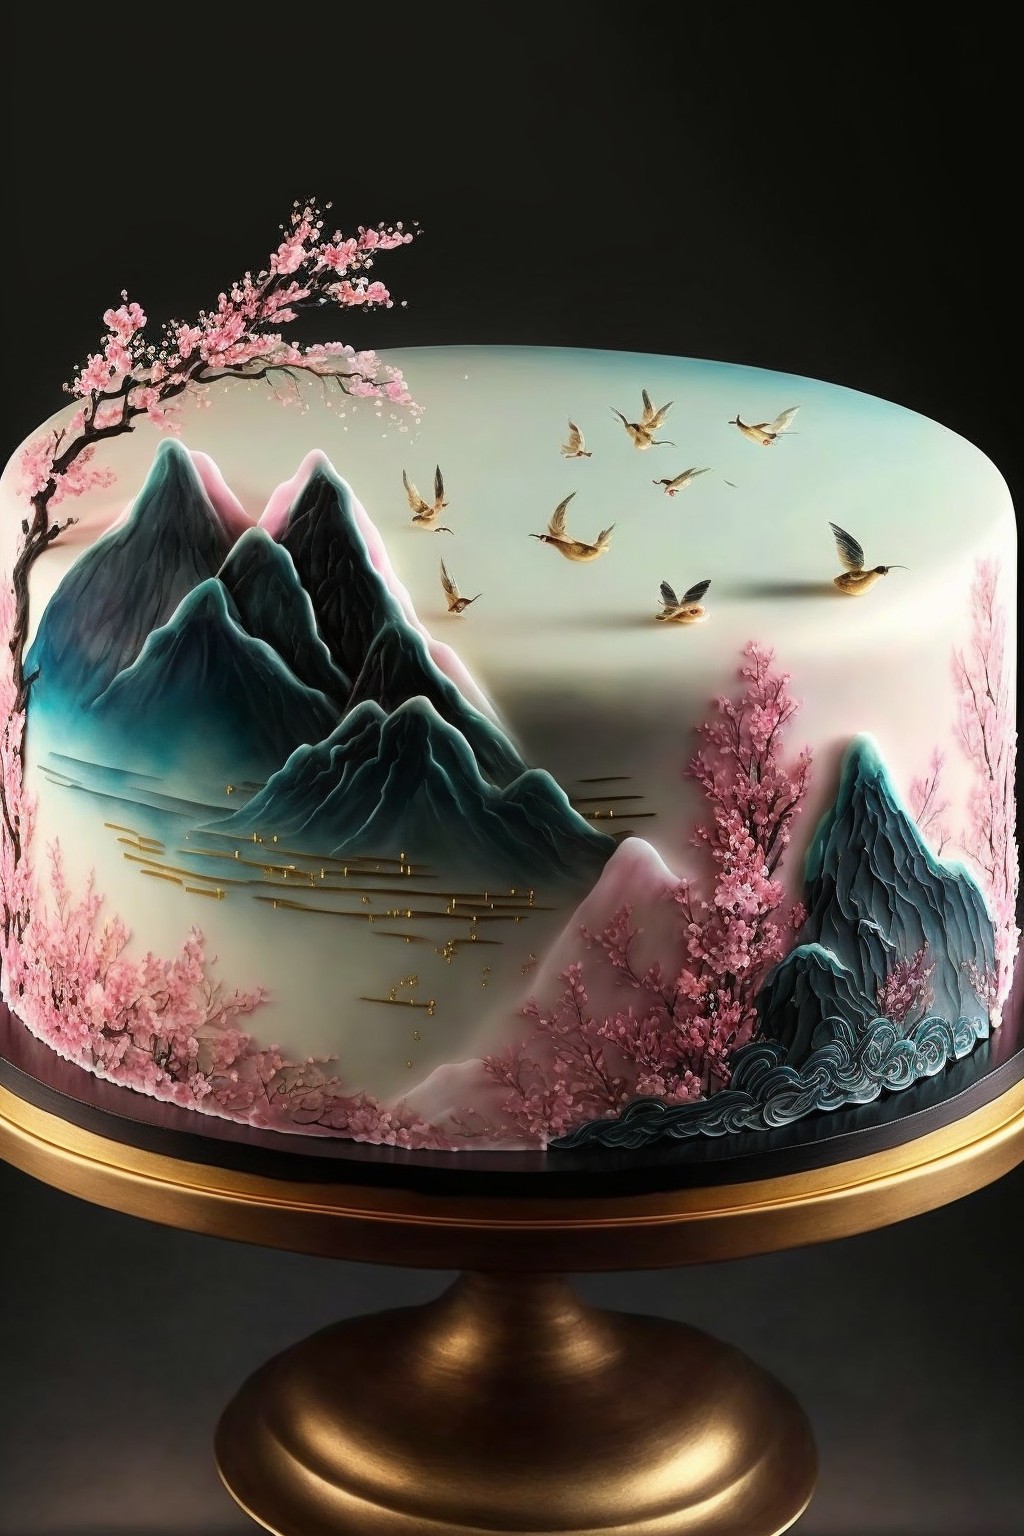 国风蛋糕中国人的浪漫